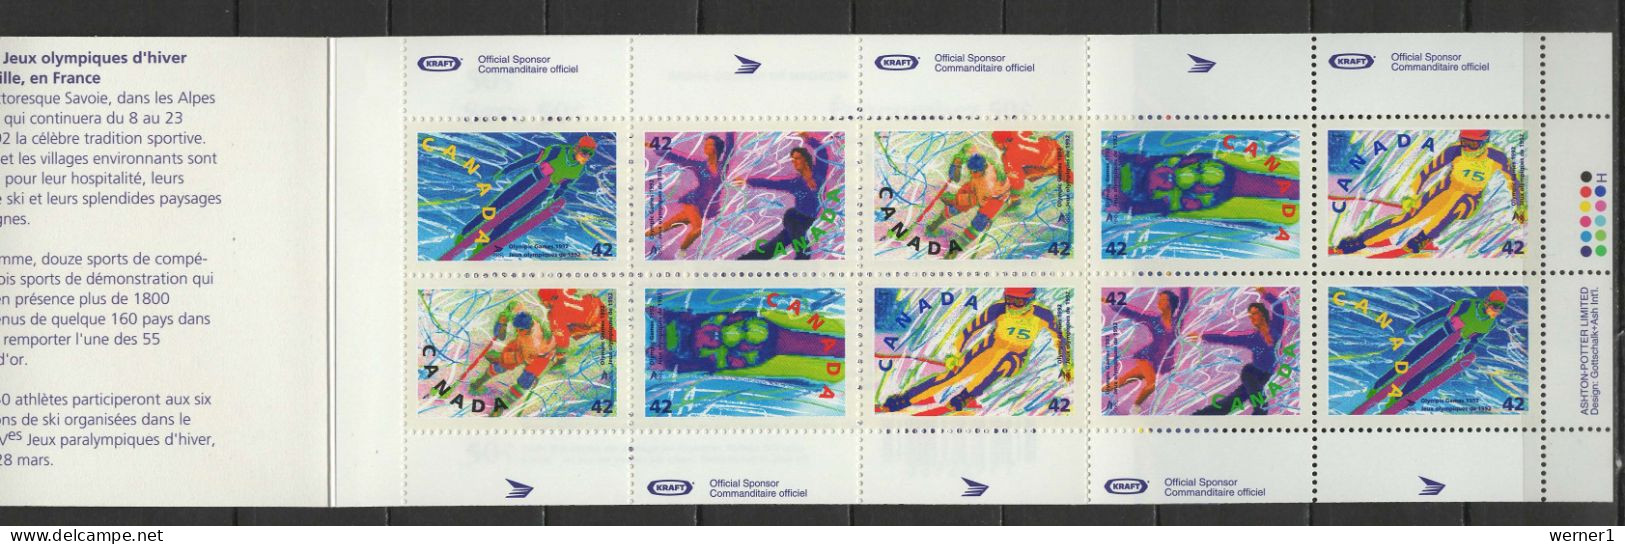 Canada 1992 Olympic Games Albertville Stamp Booklet MNH - Hiver 1992: Albertville